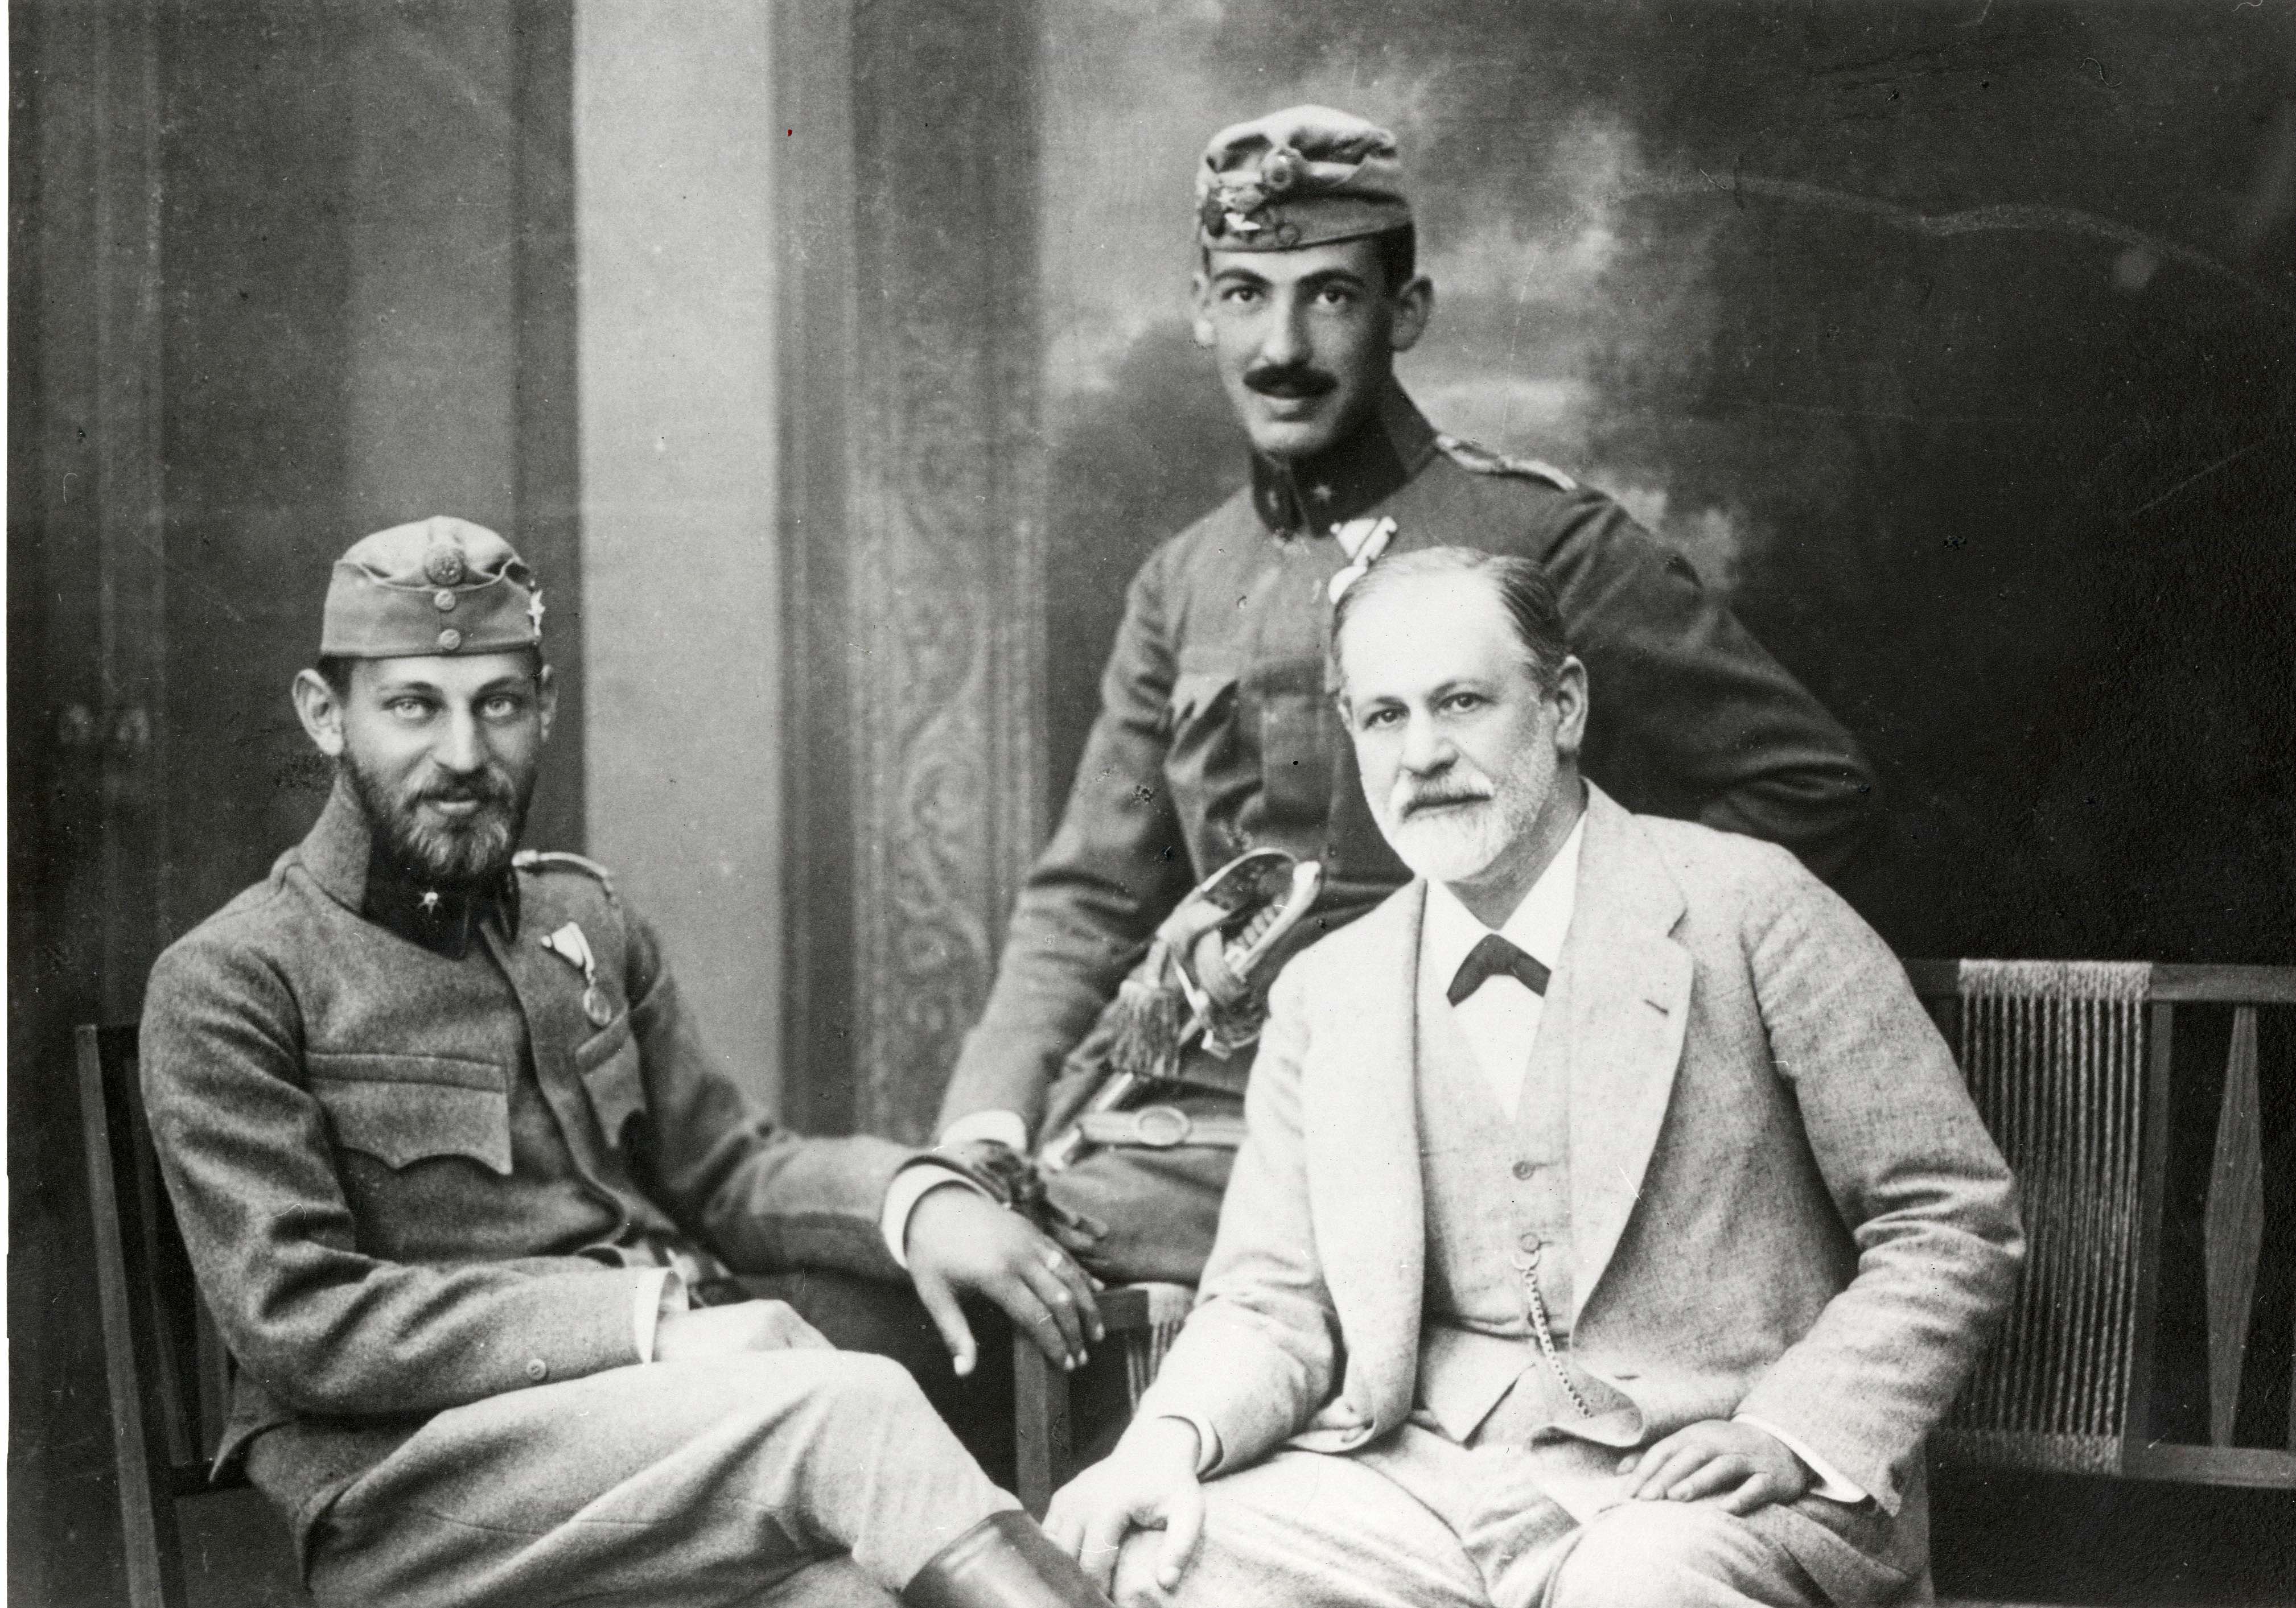 Sigmund Freud mit Söhnen Ernst und Martin in Uniform (1916)